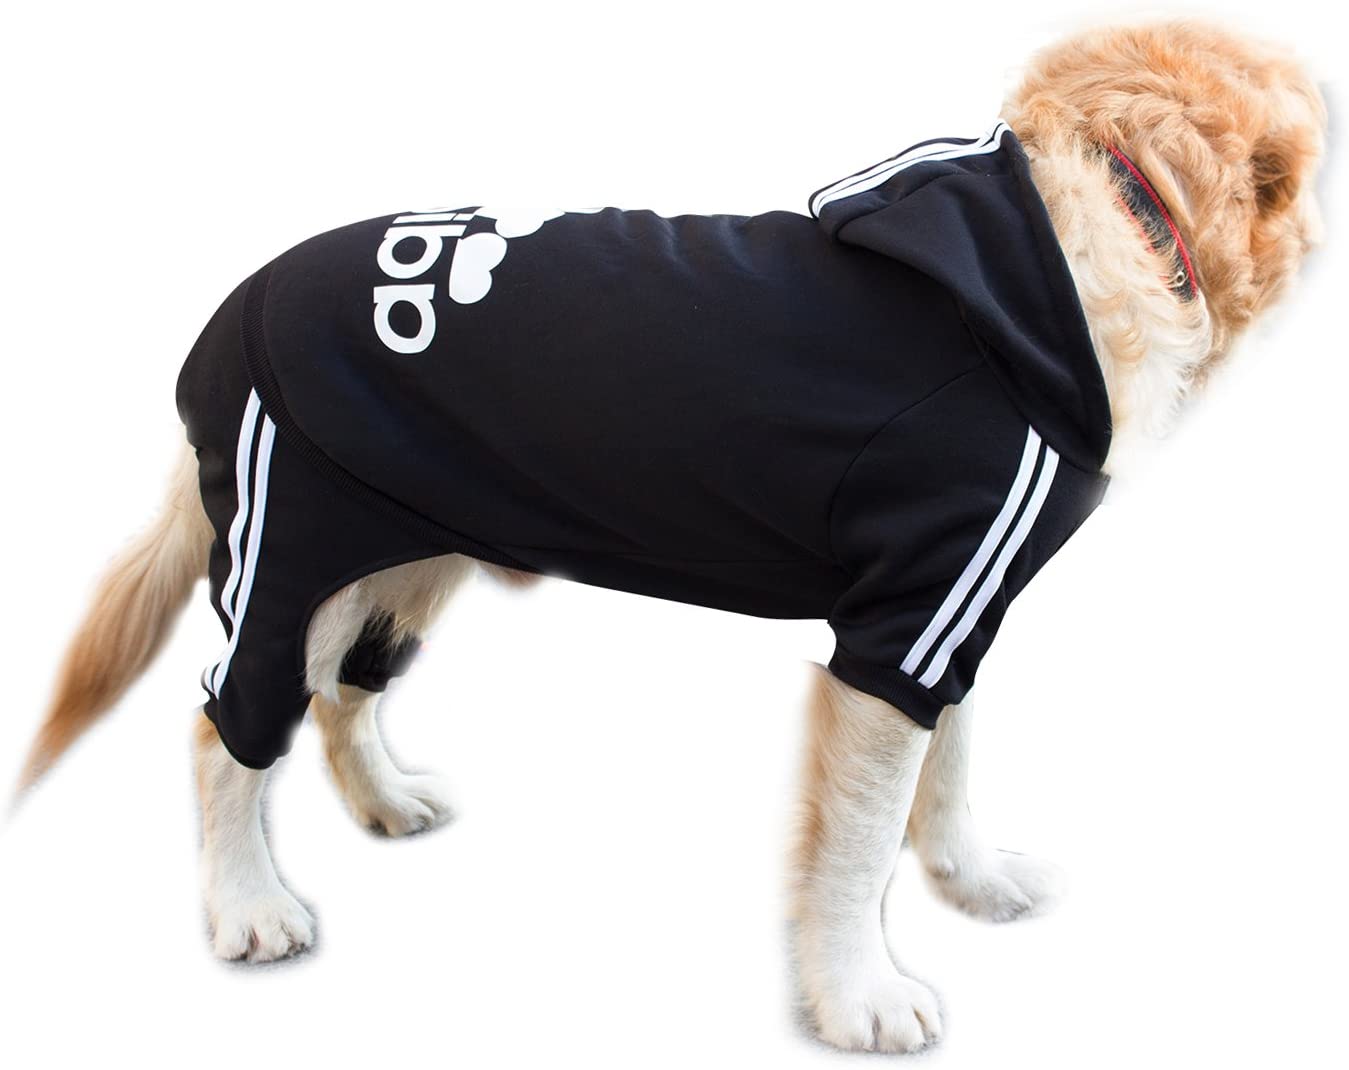 Adidog-ropa de algodón cálida para perros pequeños y grandes, Sudadera con capucha de dos patas para cachorros, Bulldog Francés, chaqueta para mascotas, XS-9XL